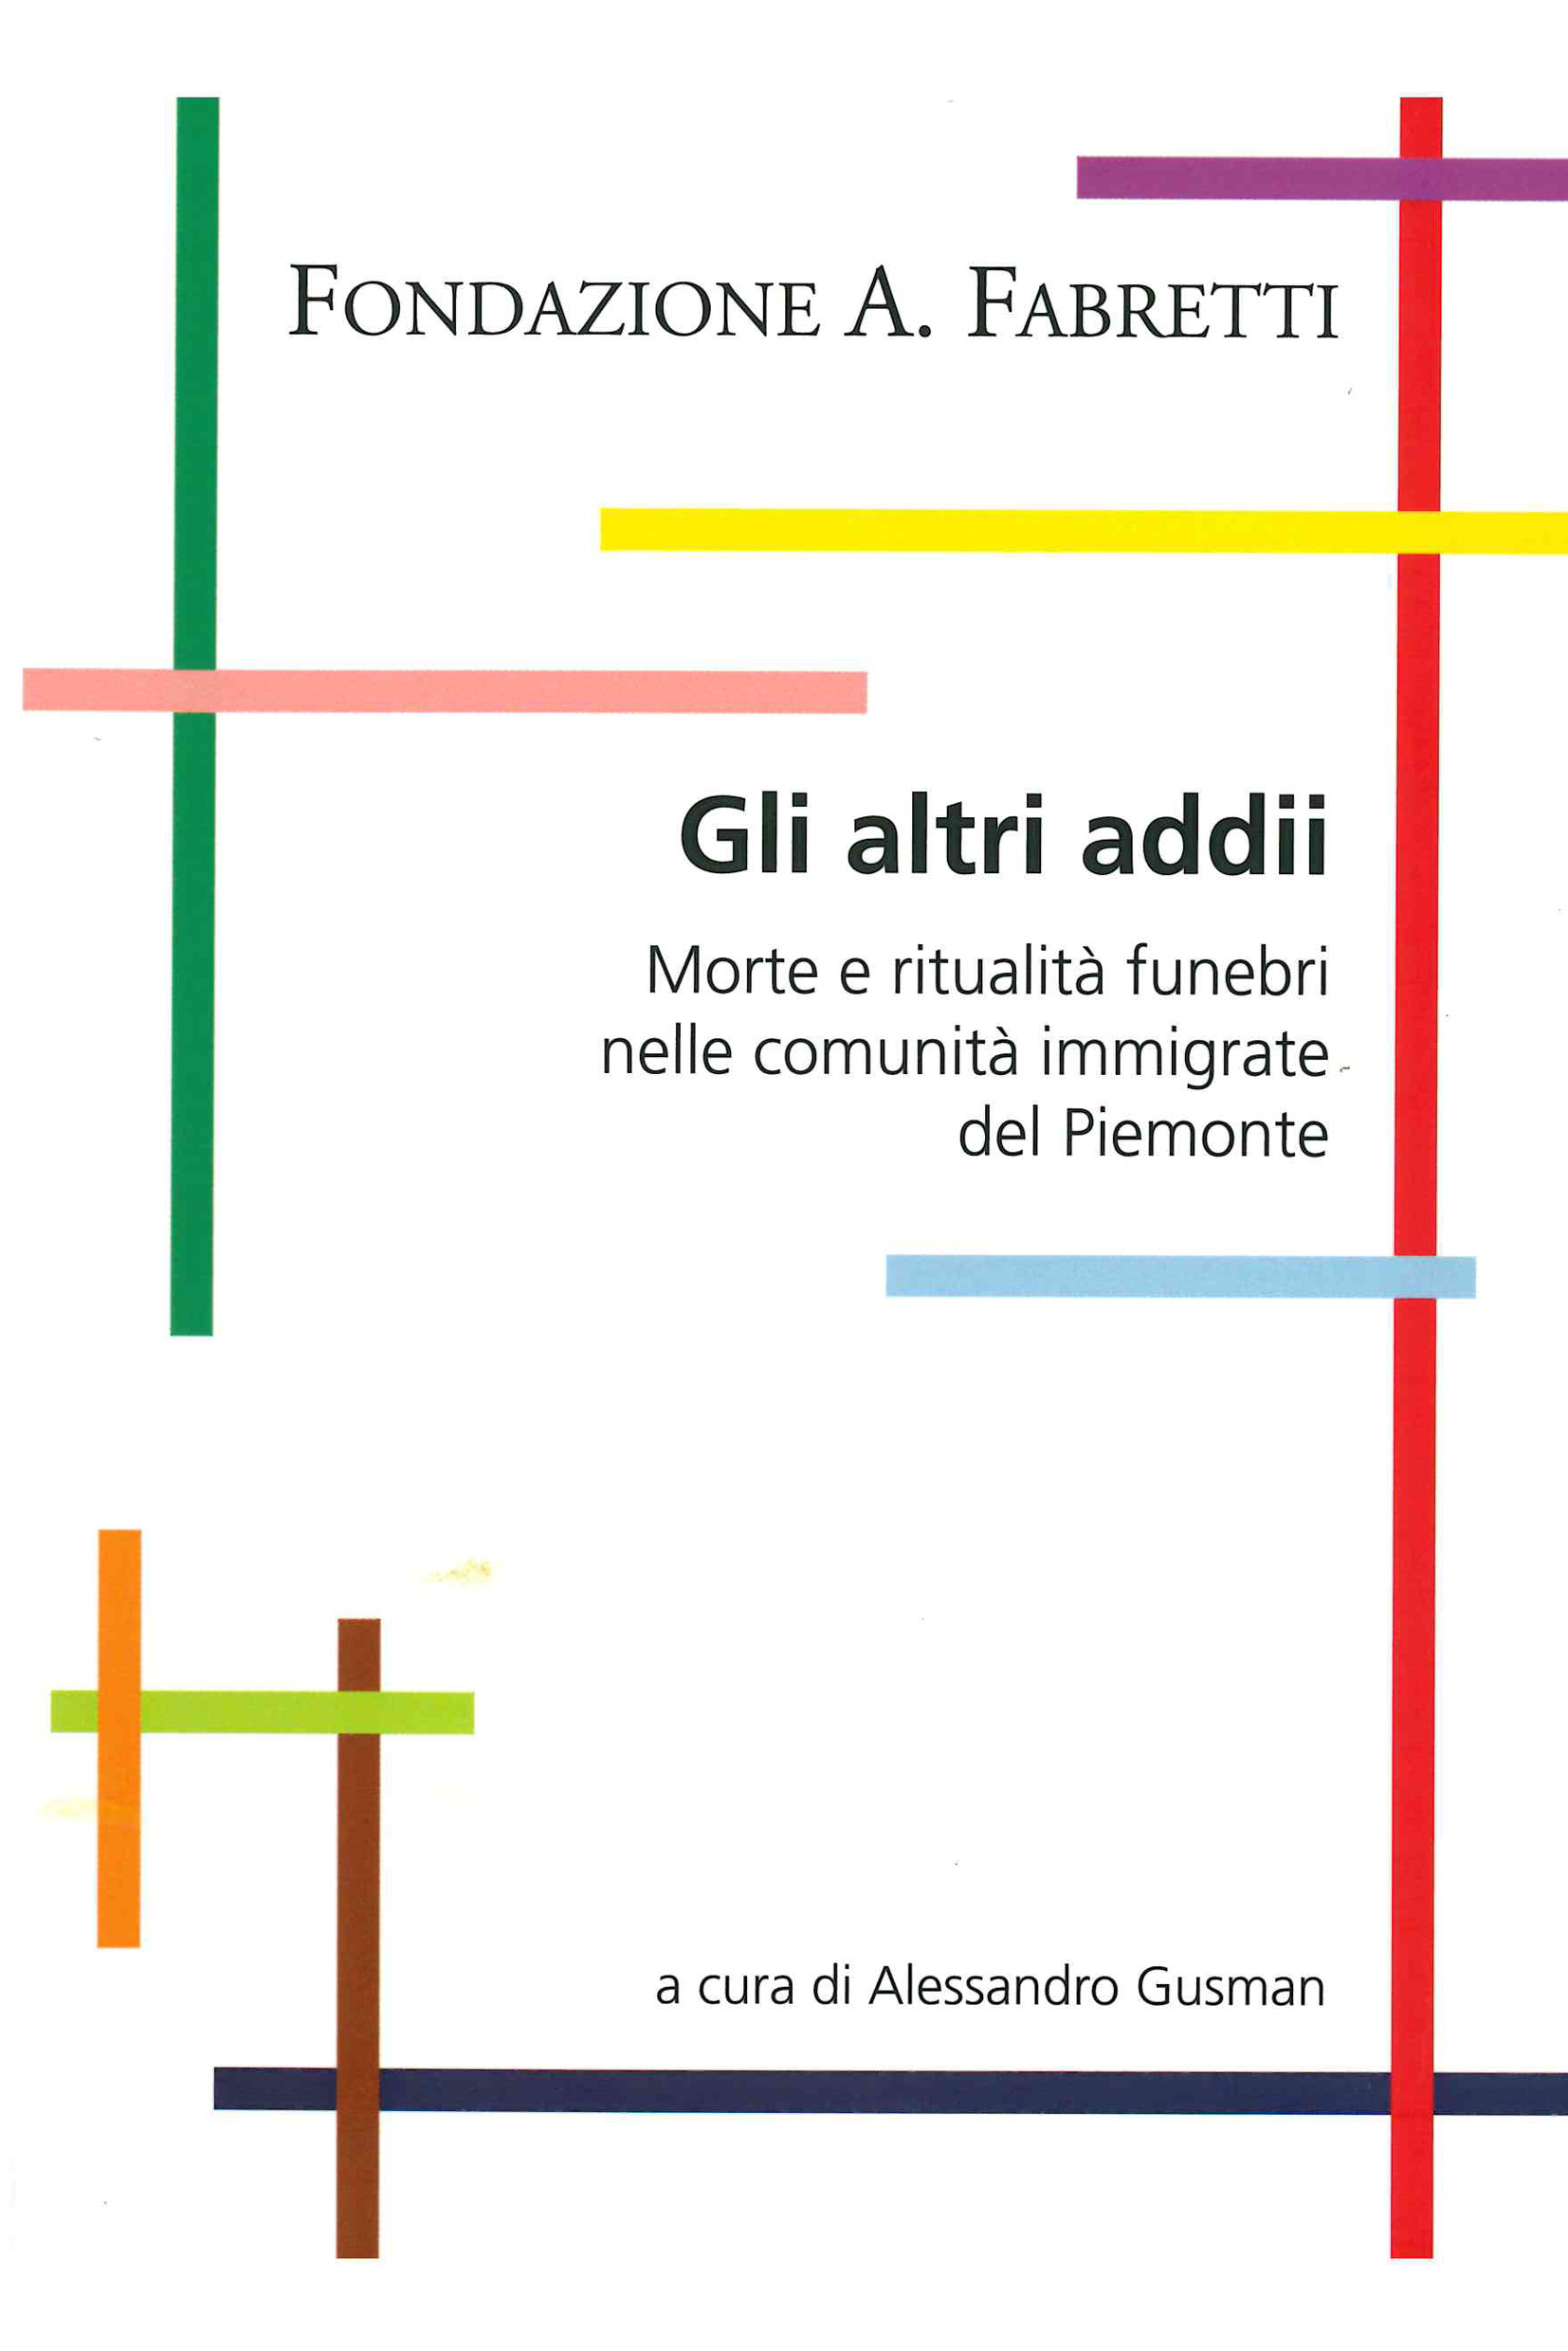 Gusman A. (2010). Gli altri addii. Morte e ritualità funebri nelle comunità immigrate del Piemonte. Fondazione A. Fabretti 